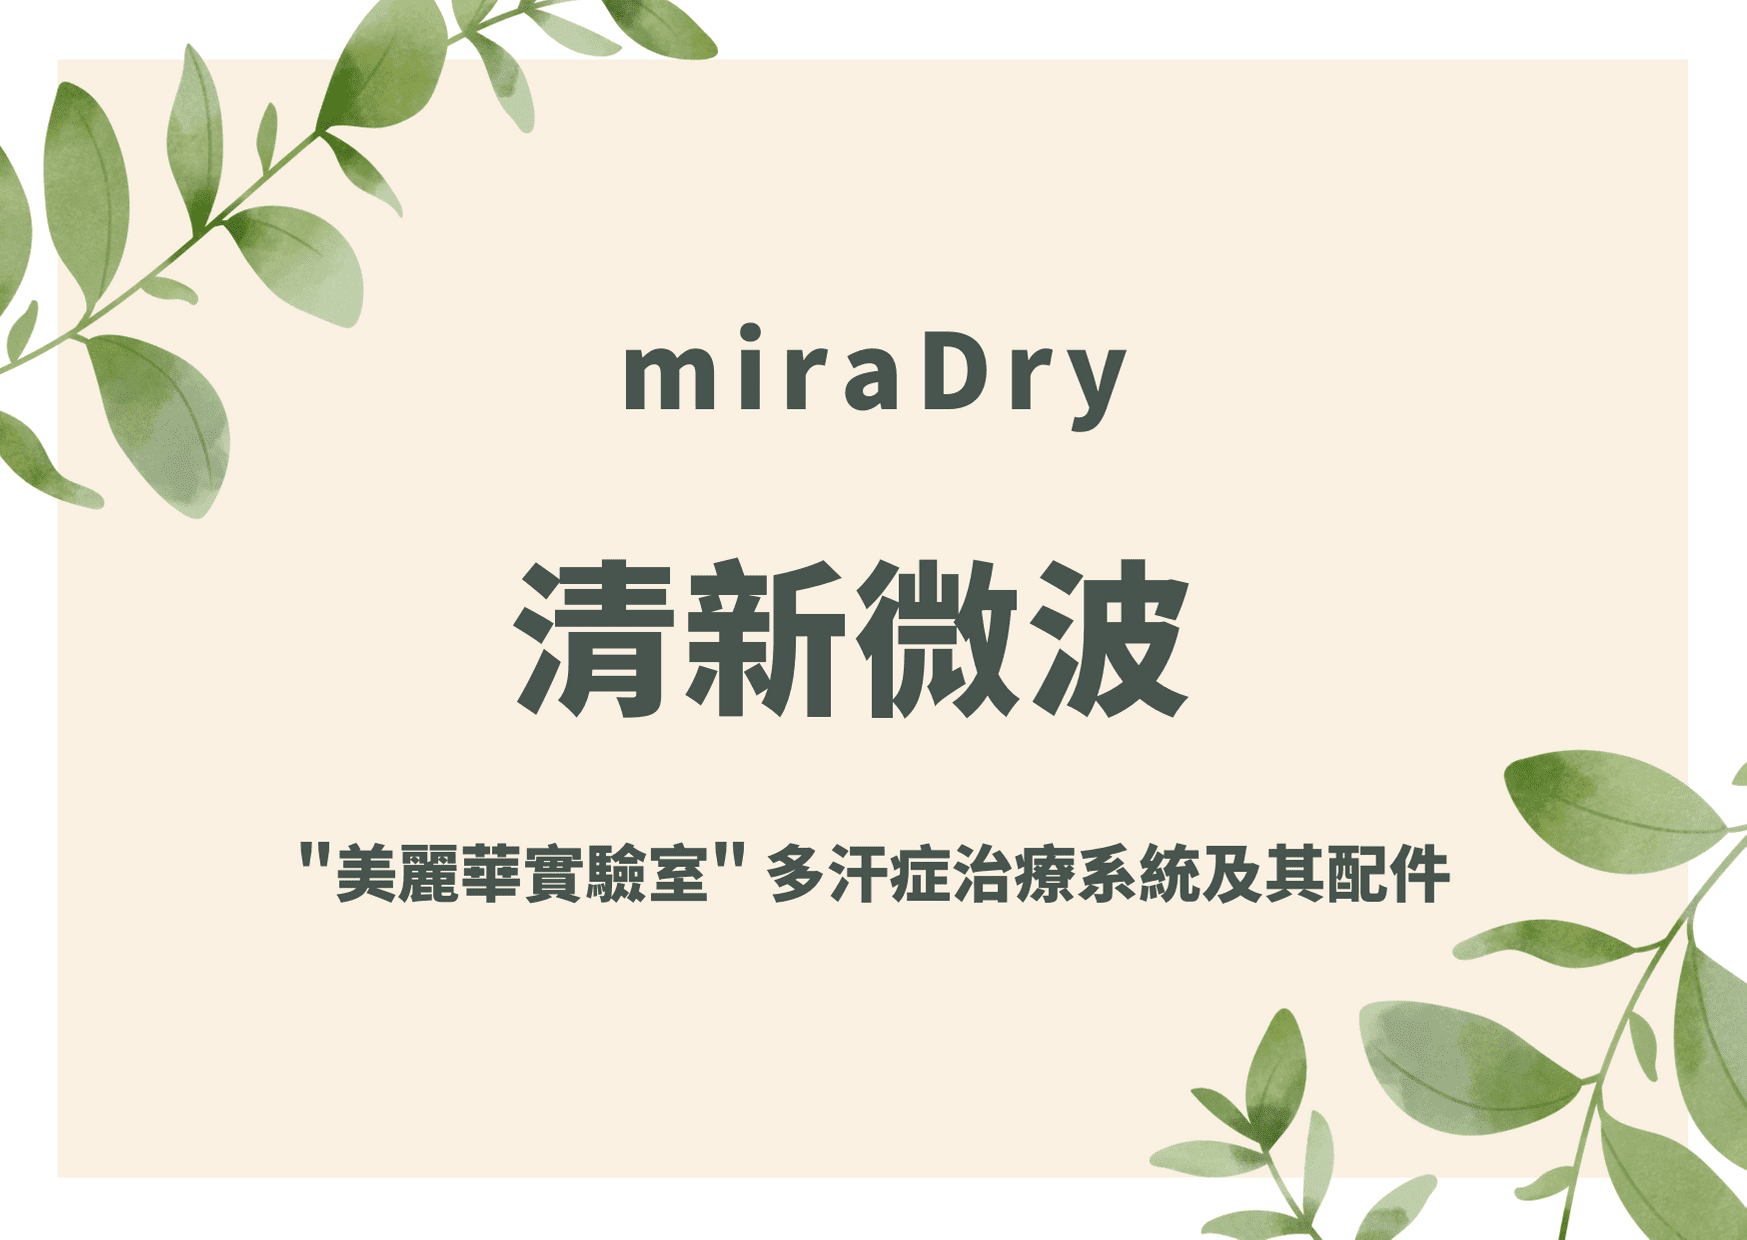 清新微波 miraDry